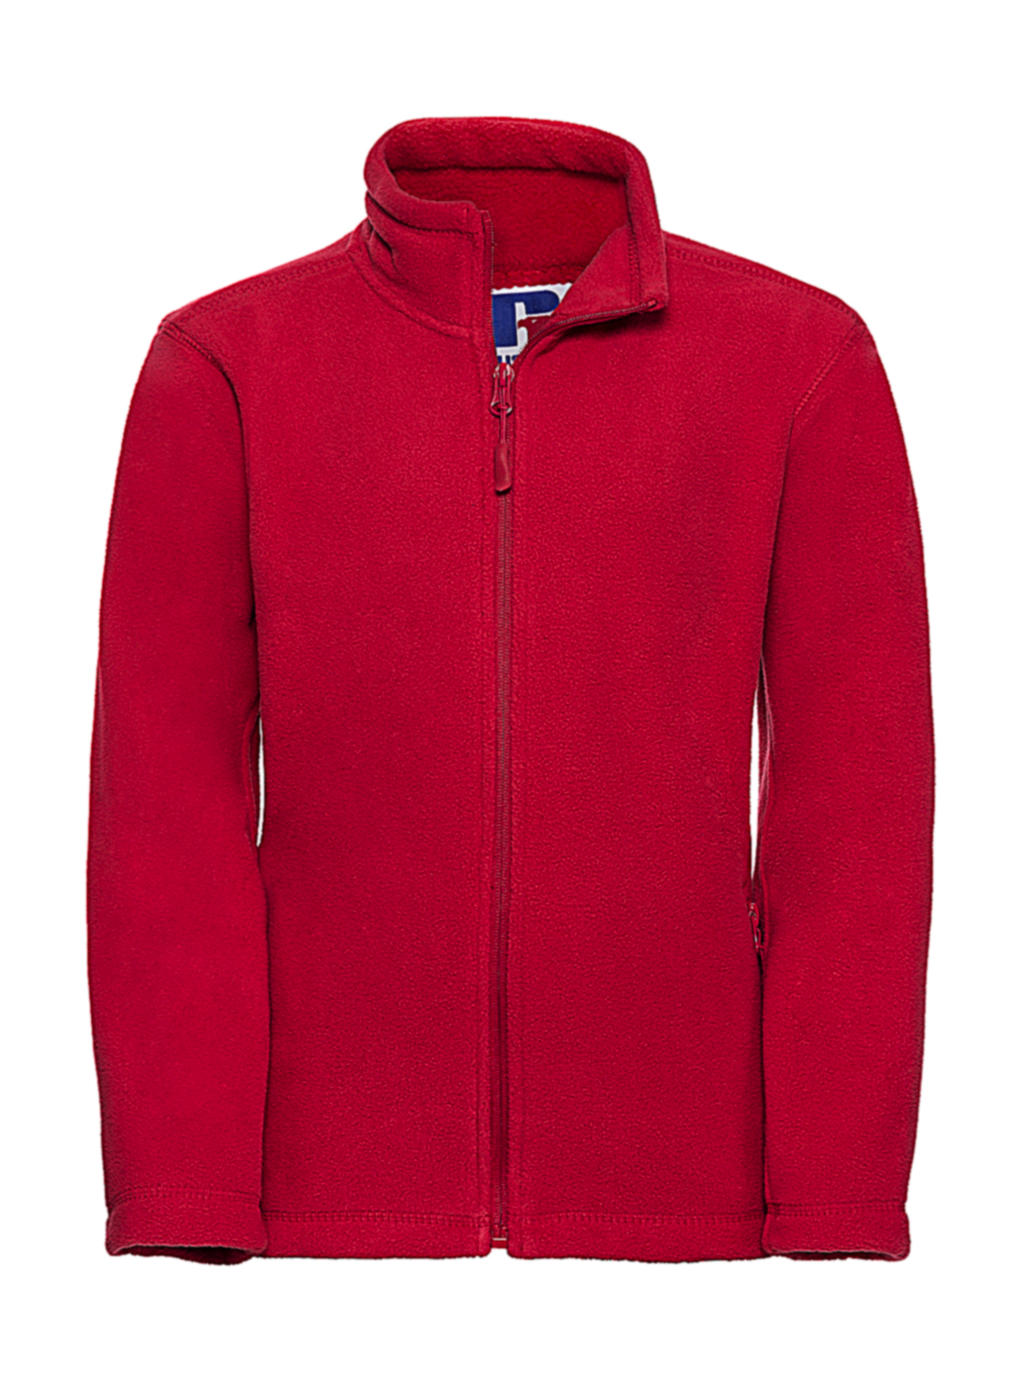  Kids Full Zip Outdoor Fleece in Farbe Classic Red